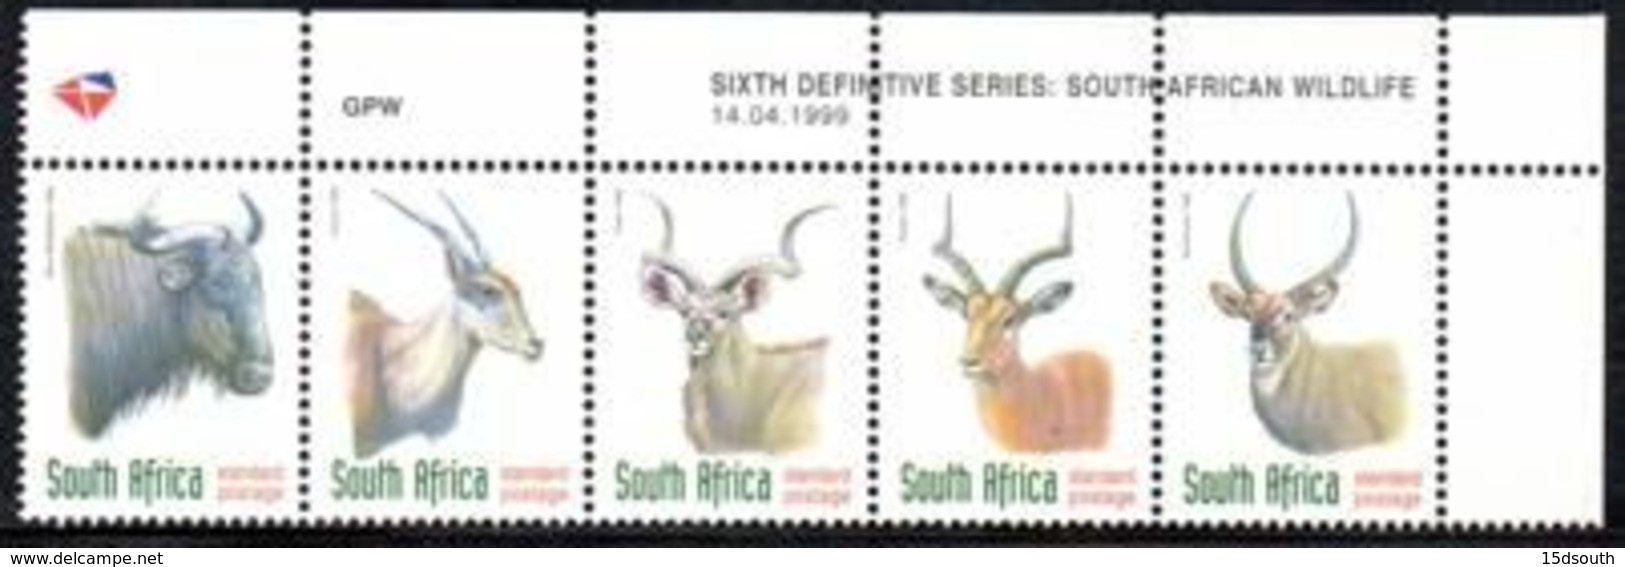 South Africa - 1999 Redrawn 6th Definitive SPR Antelopes Control Block (1999.04.14) (**) - Blocchi & Foglietti